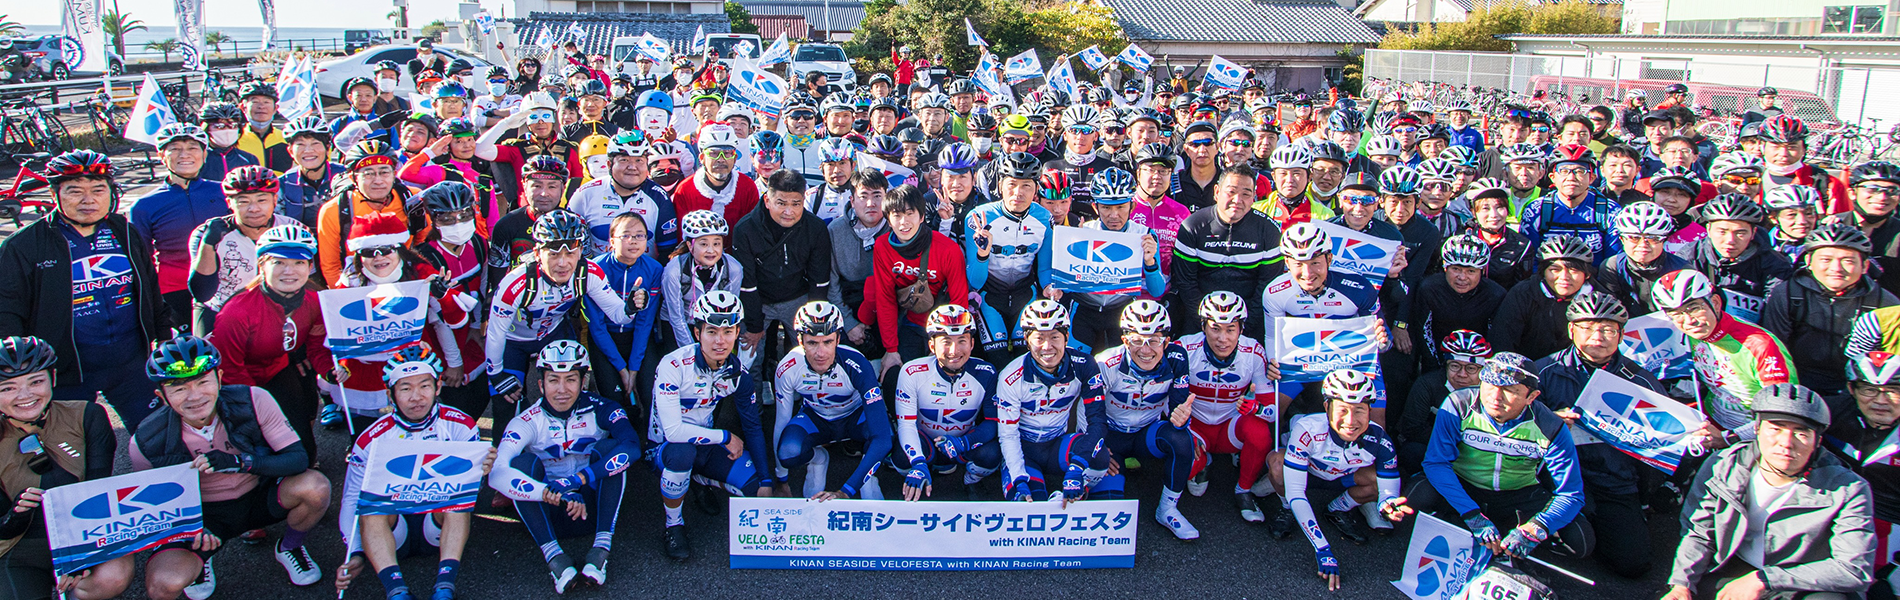 紀南シーサイドヴェロフェスタ with KINAN Cycling Team